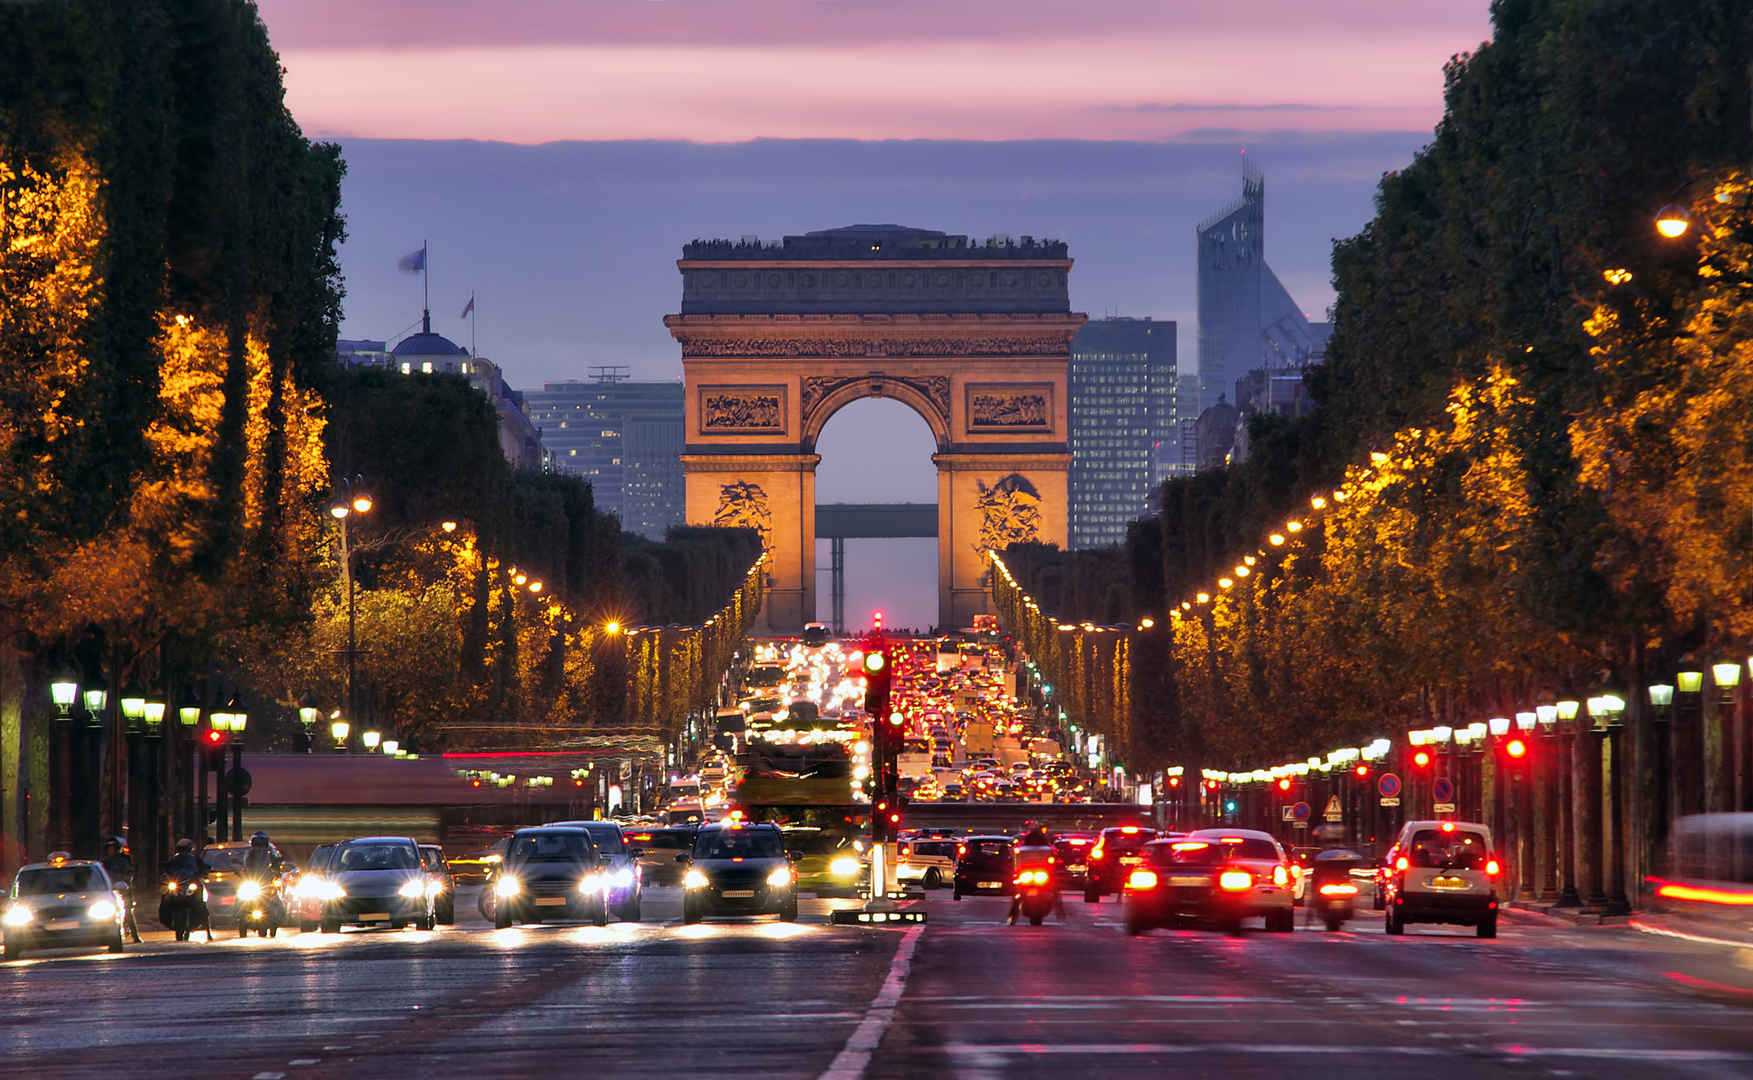 流光溢彩夜巴黎 法国香榭丽舍大道点亮圣诞彩灯